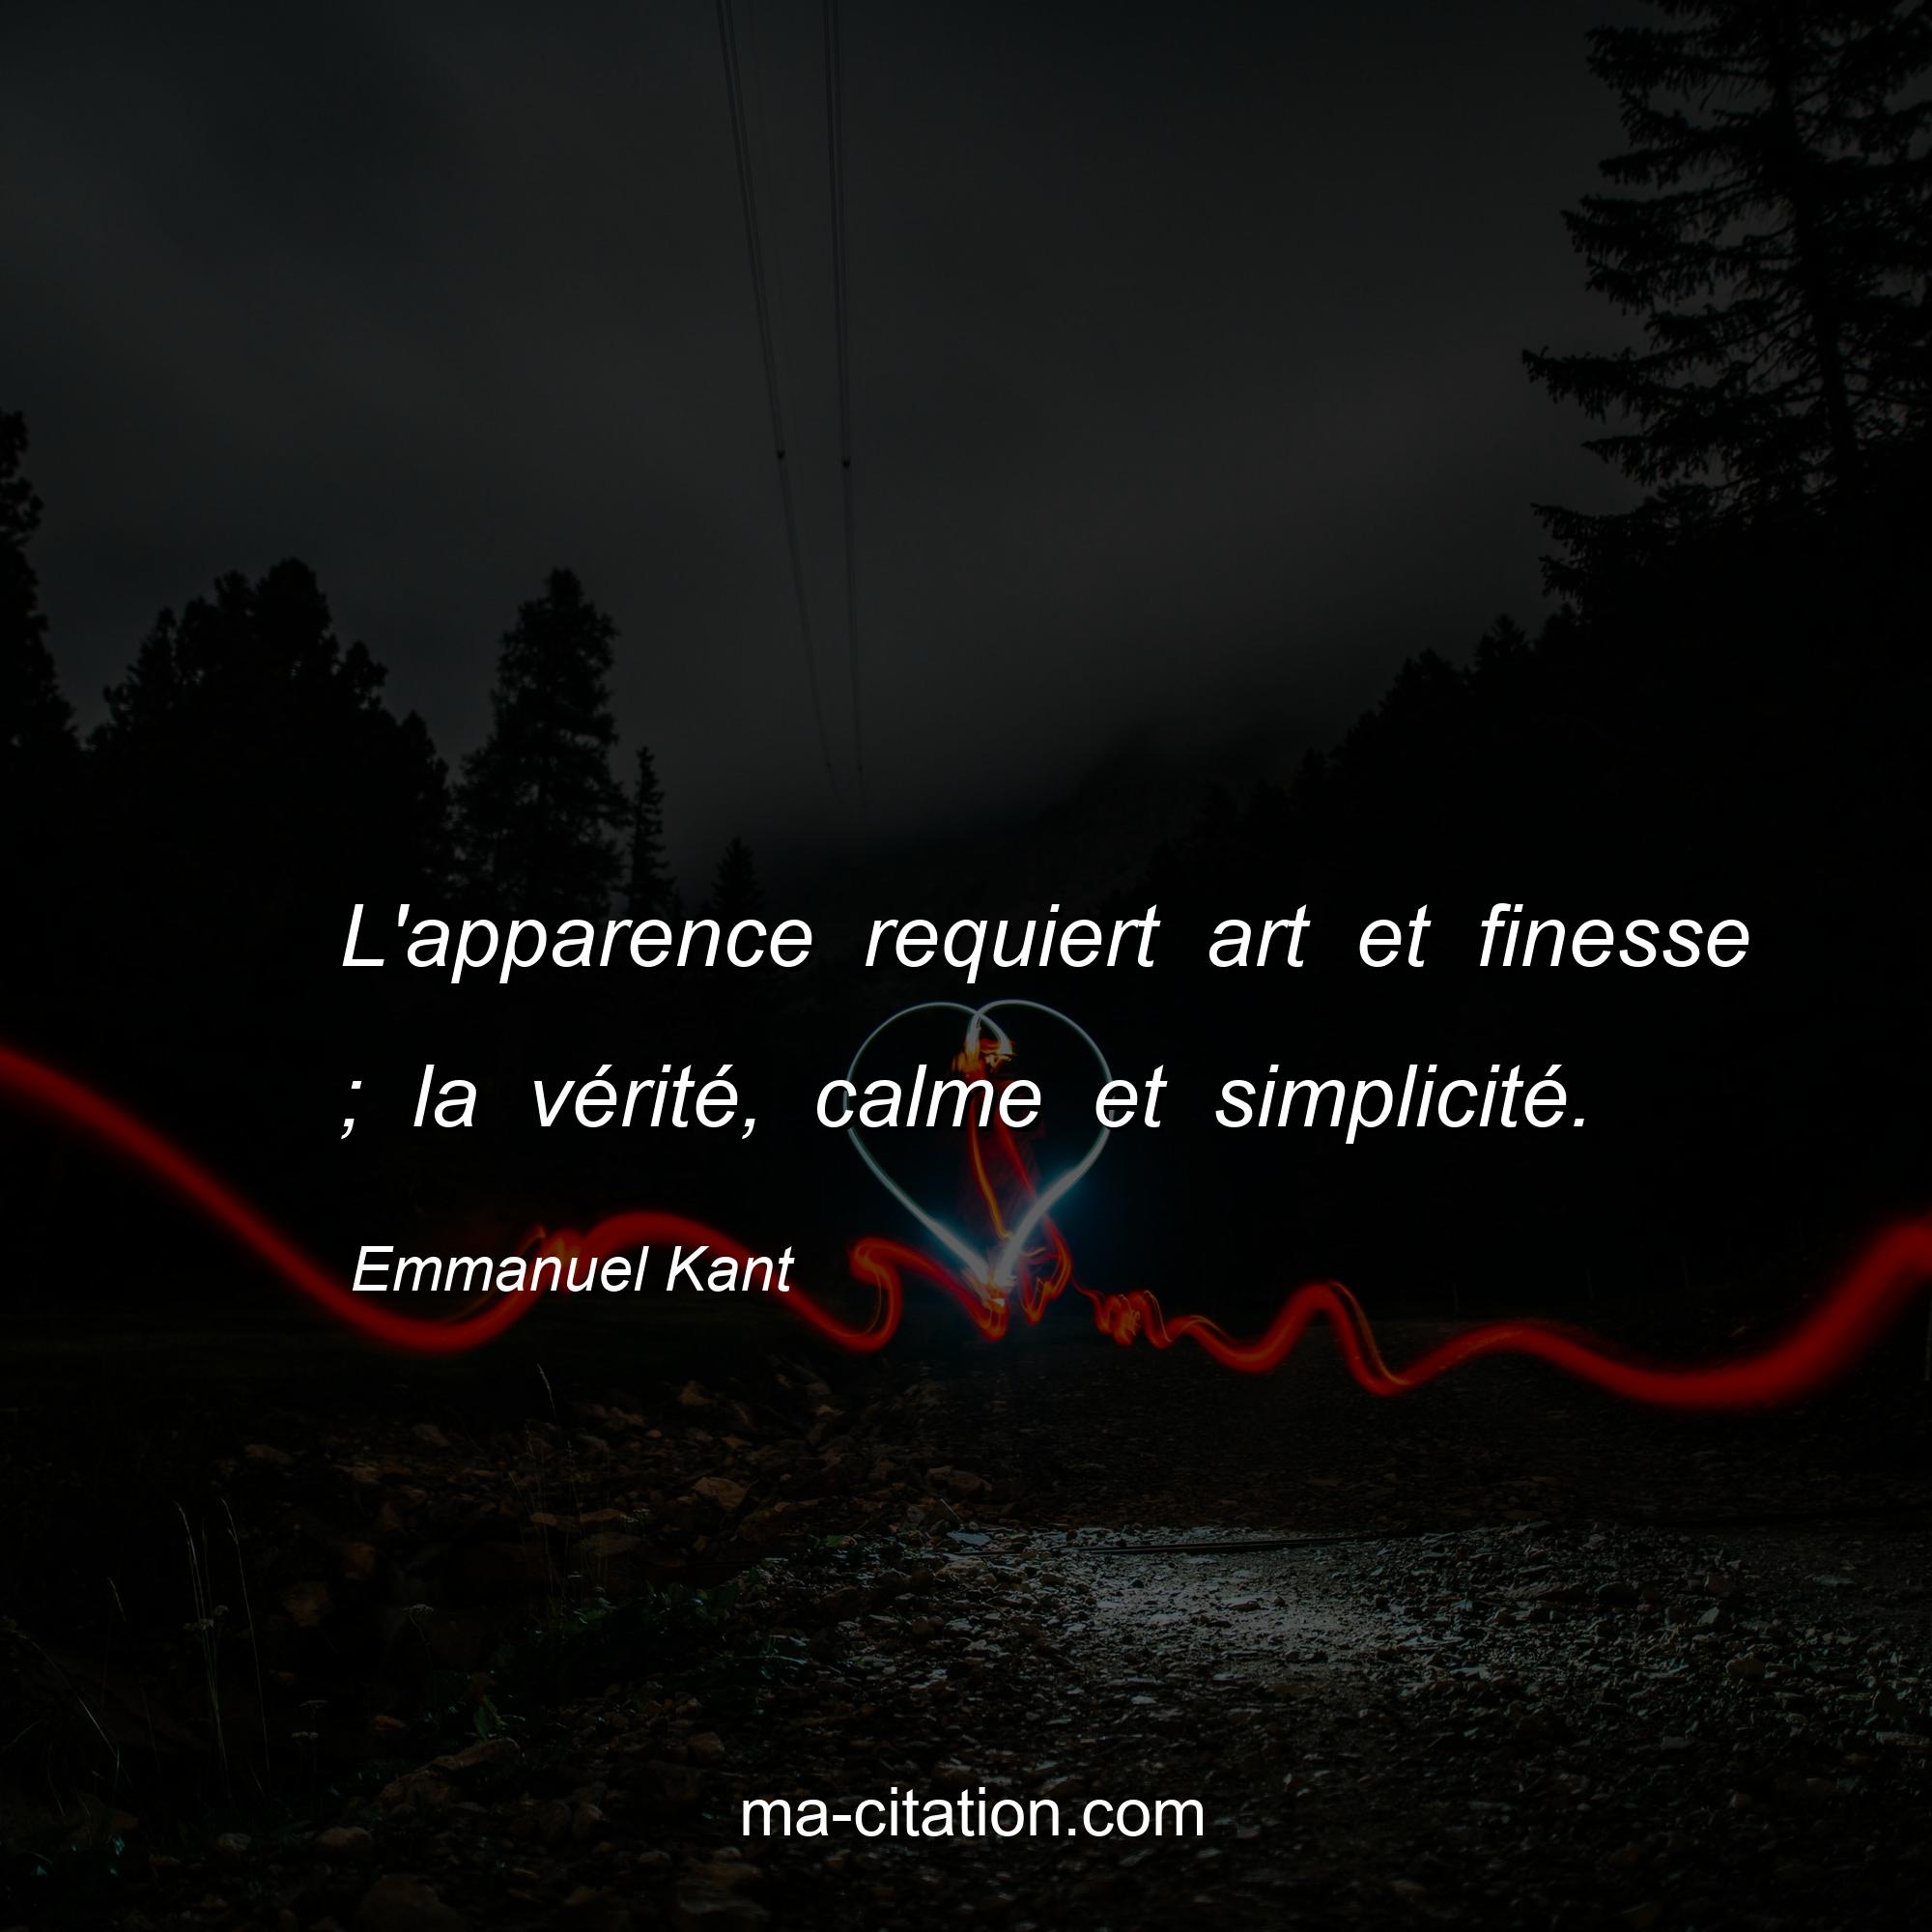 Emmanuel Kant : L'apparence requiert art et finesse ; la vérité, calme et simplicité.